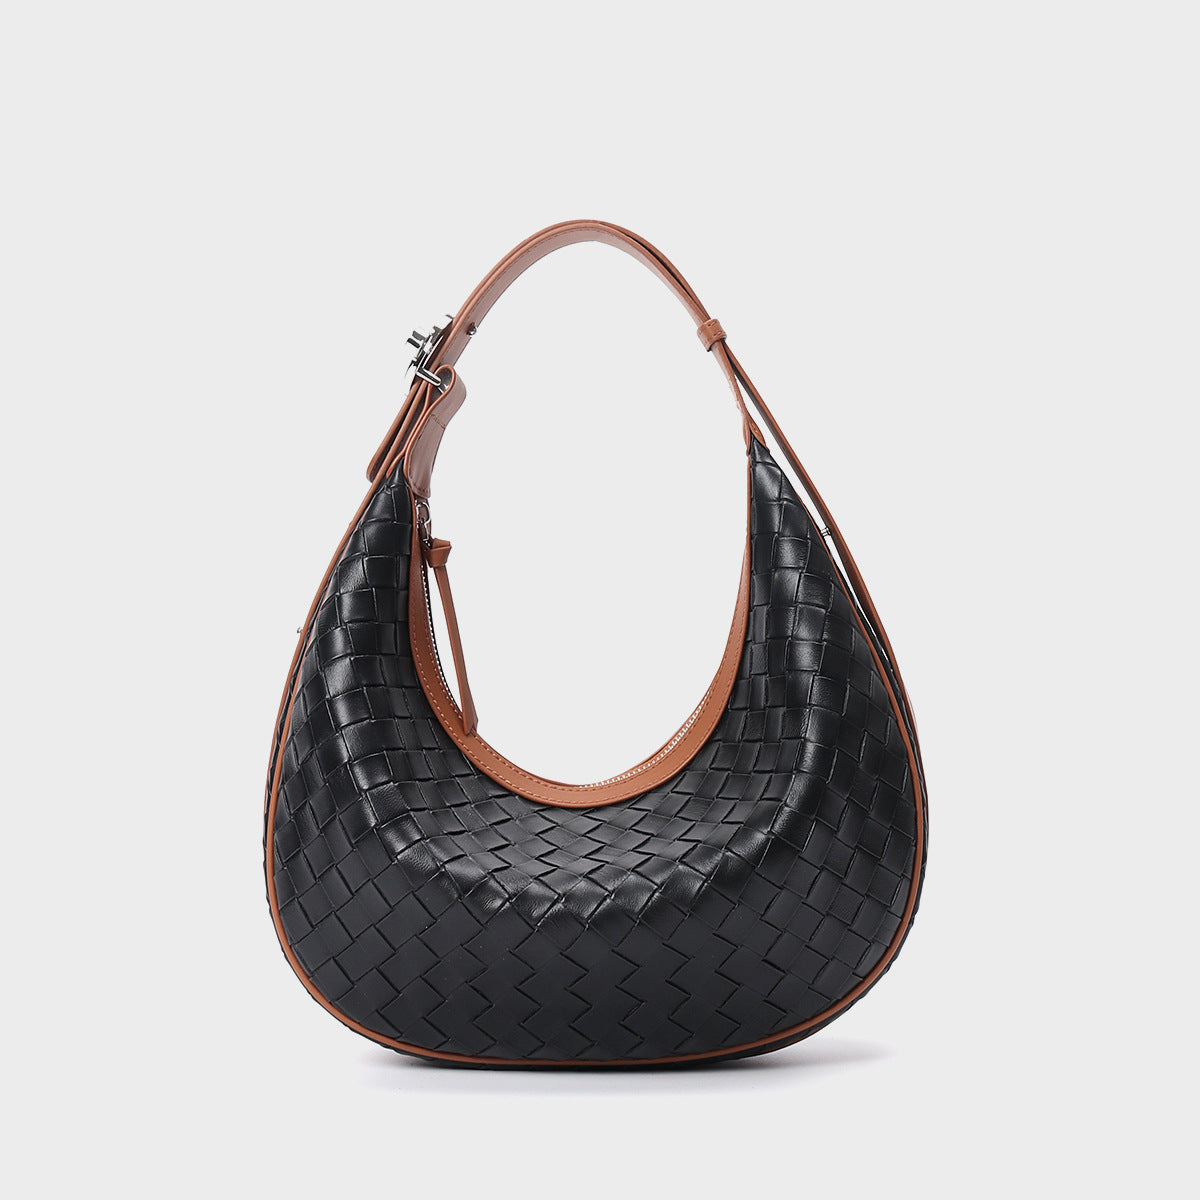 Design Niche Genuine Leather Bag Women's Woven